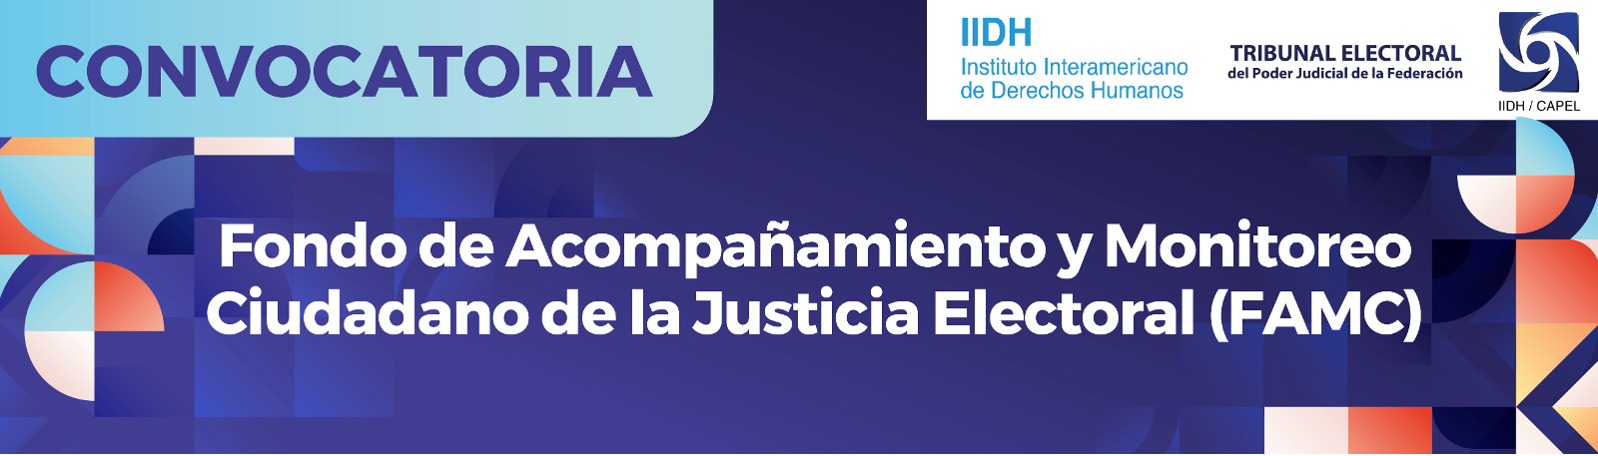 Fondo de Acompañamiento y Monitoreo Ciudadano de la Justicia Electoral (FAMC)